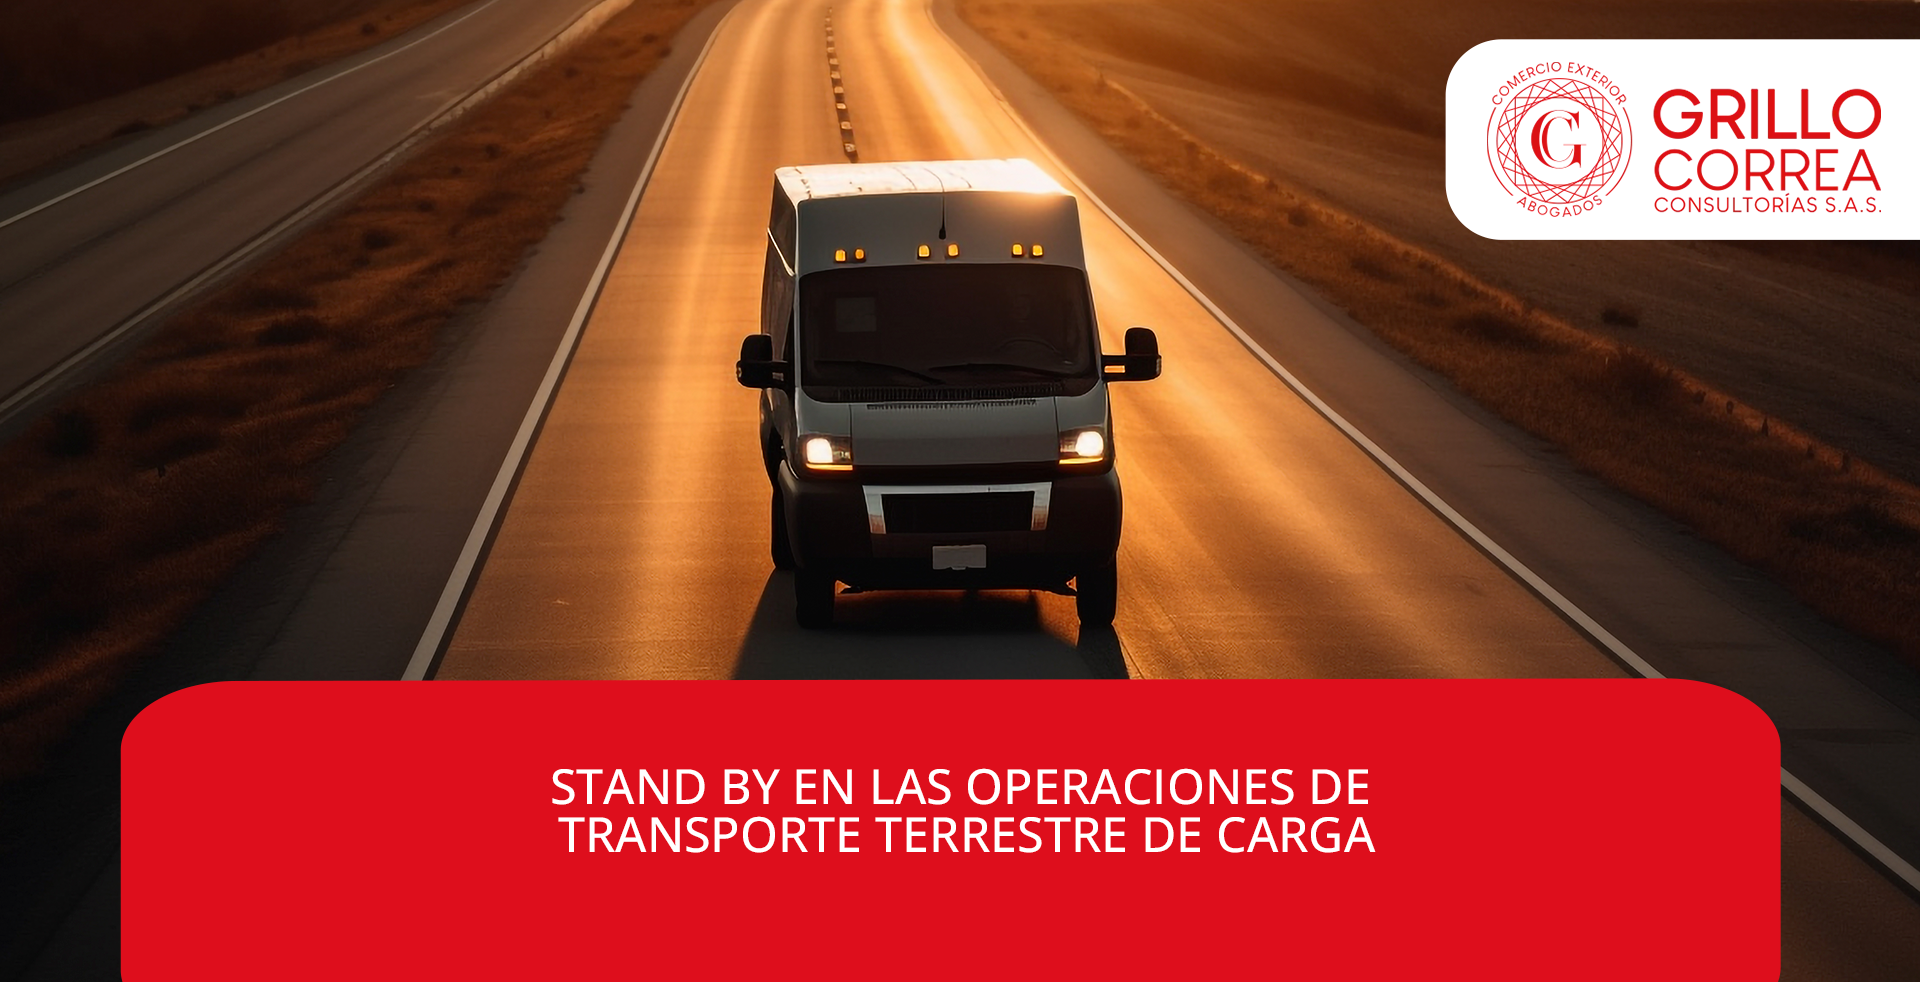 STAND BY EN LAS OPERACIONES DE TRANSPORTE TERRESTRE DE CARGA